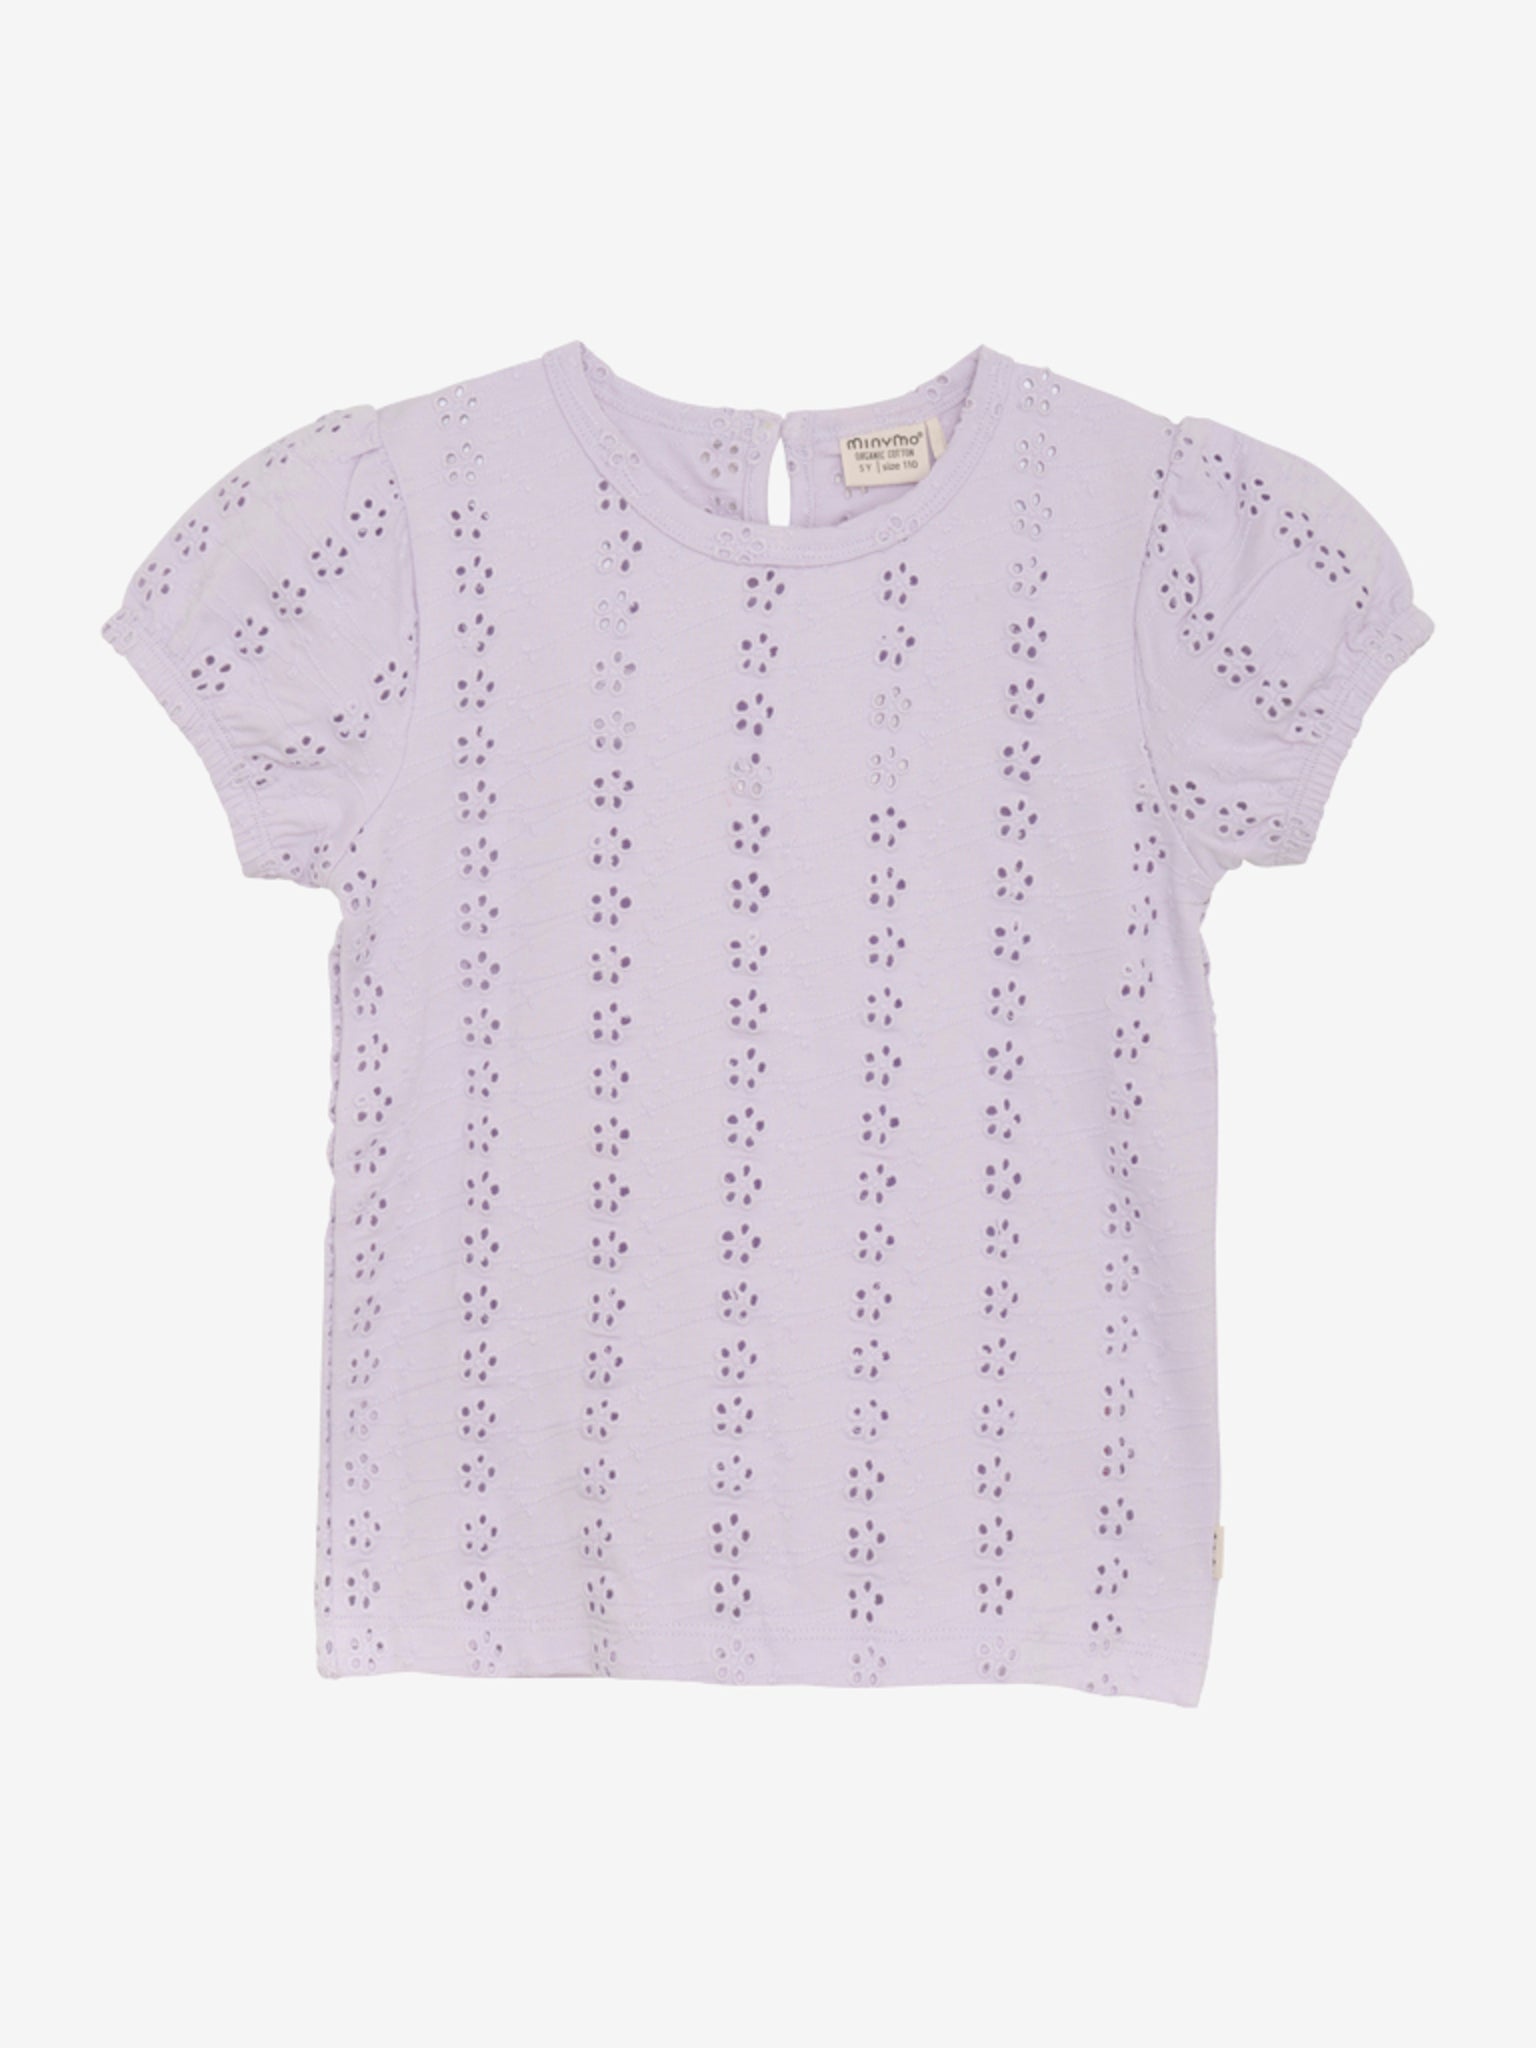 Süßes T-Shirt mit Lochmuster in Flieder für Mädchen von Minymo.